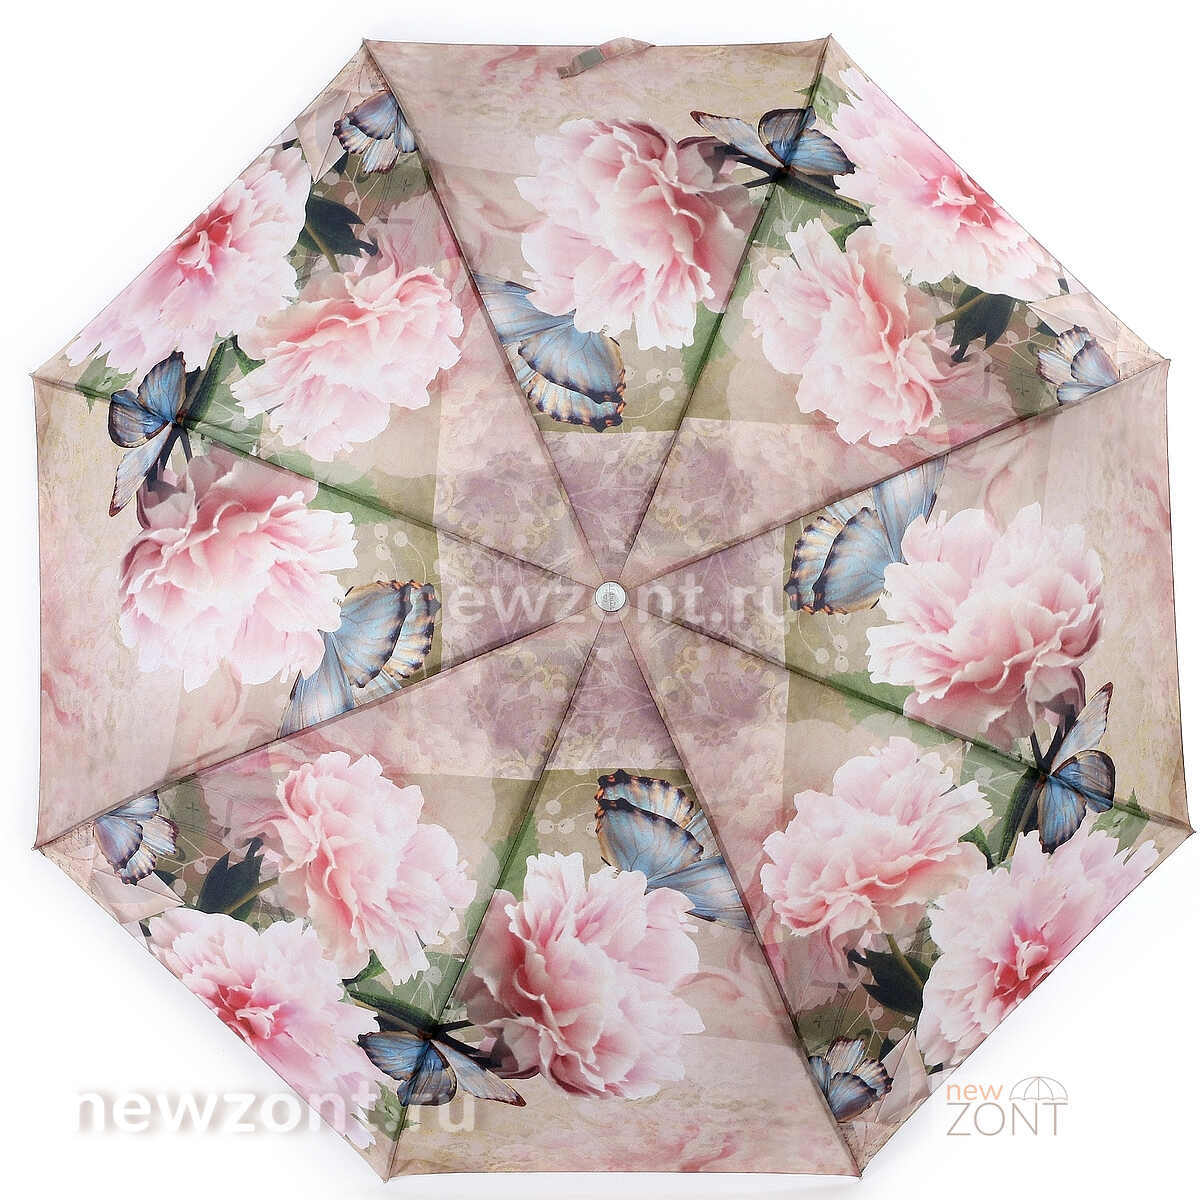 Купить зонт с цветами от топовых мировых брендов в магазине Зонтофф